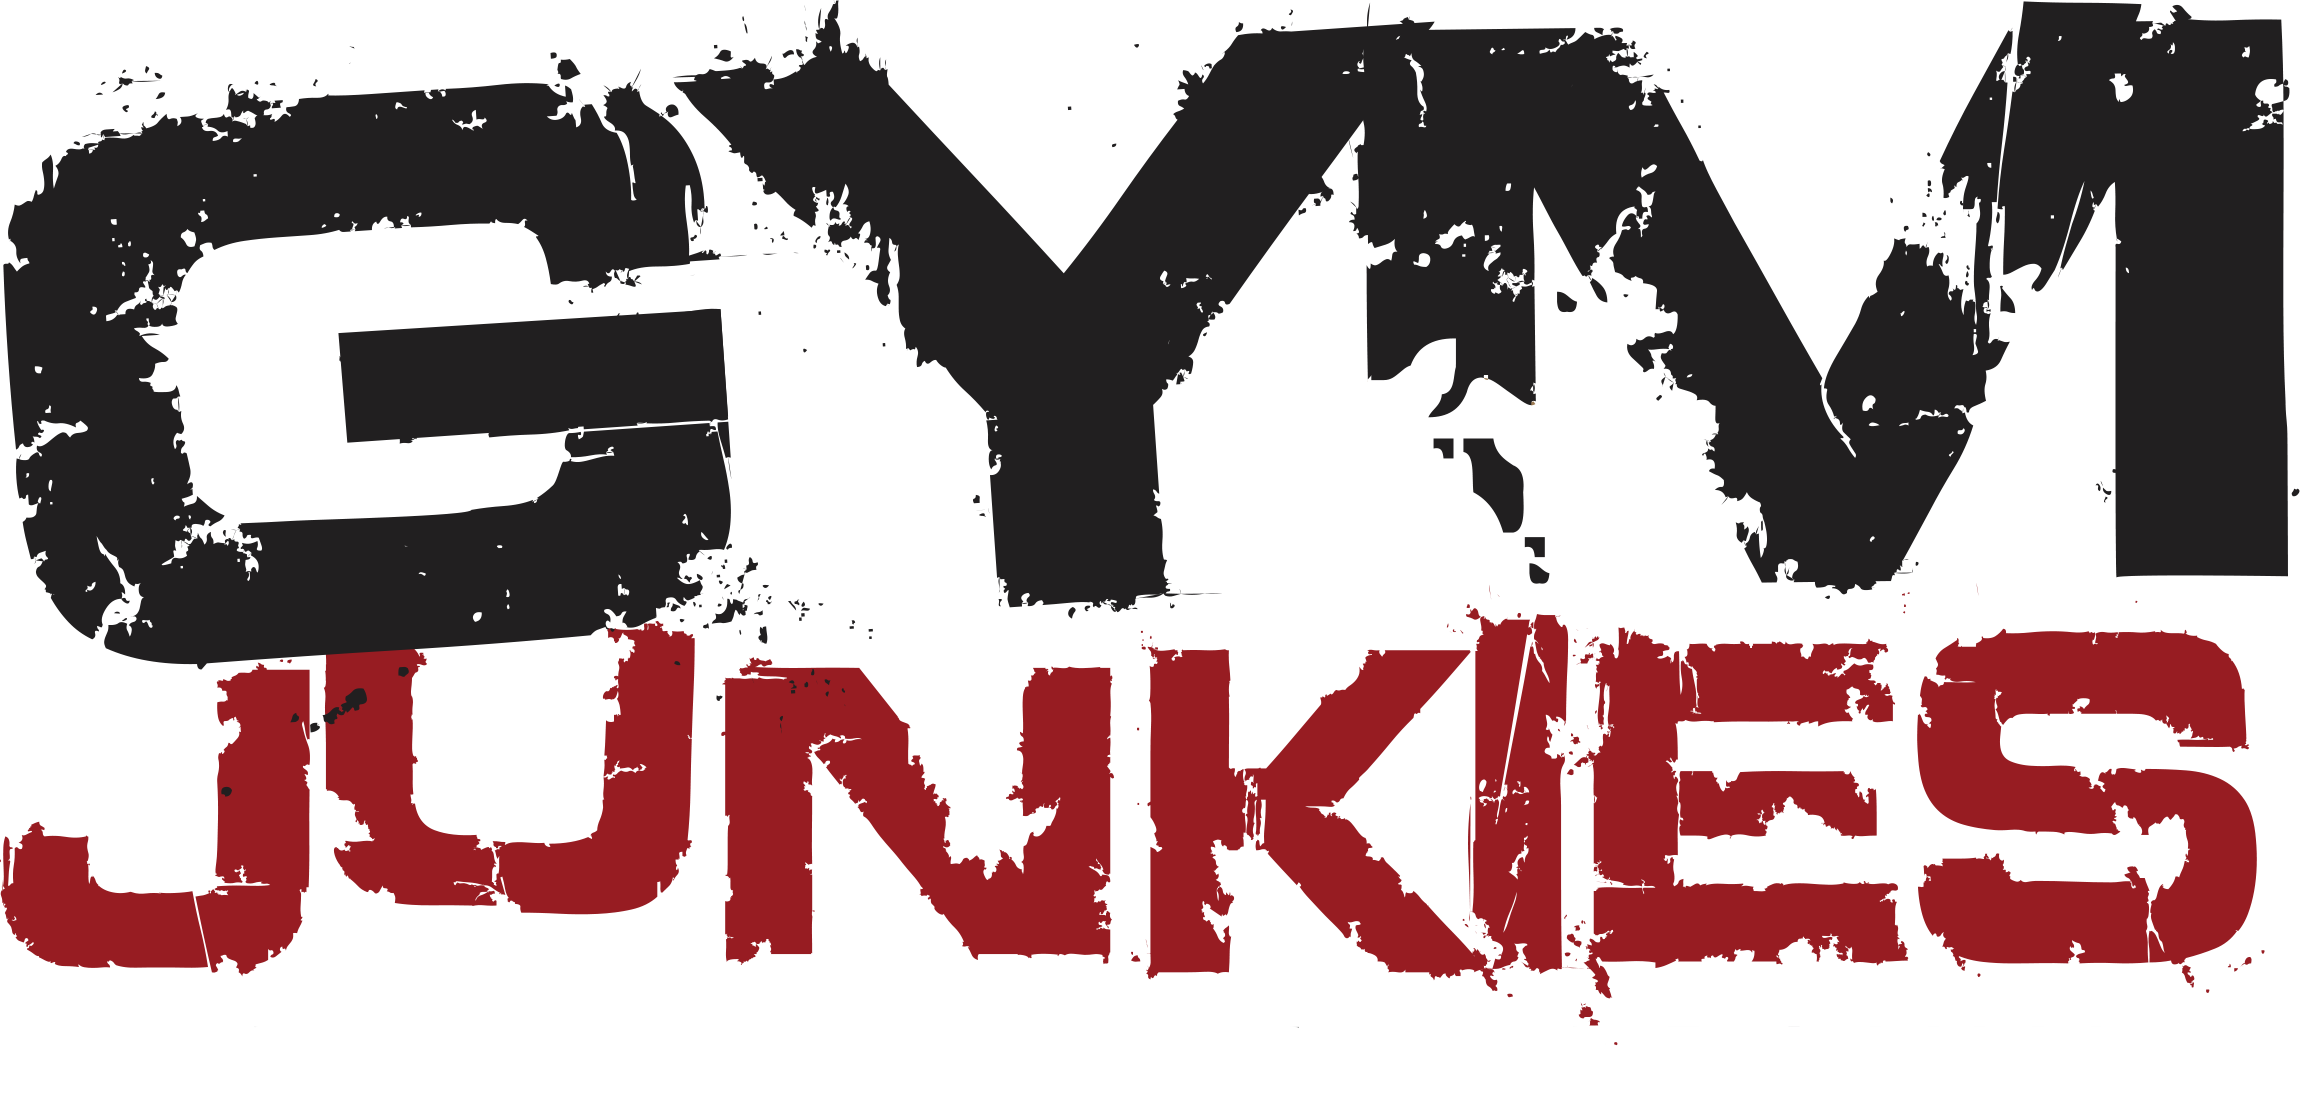 Gym Junkies LLC